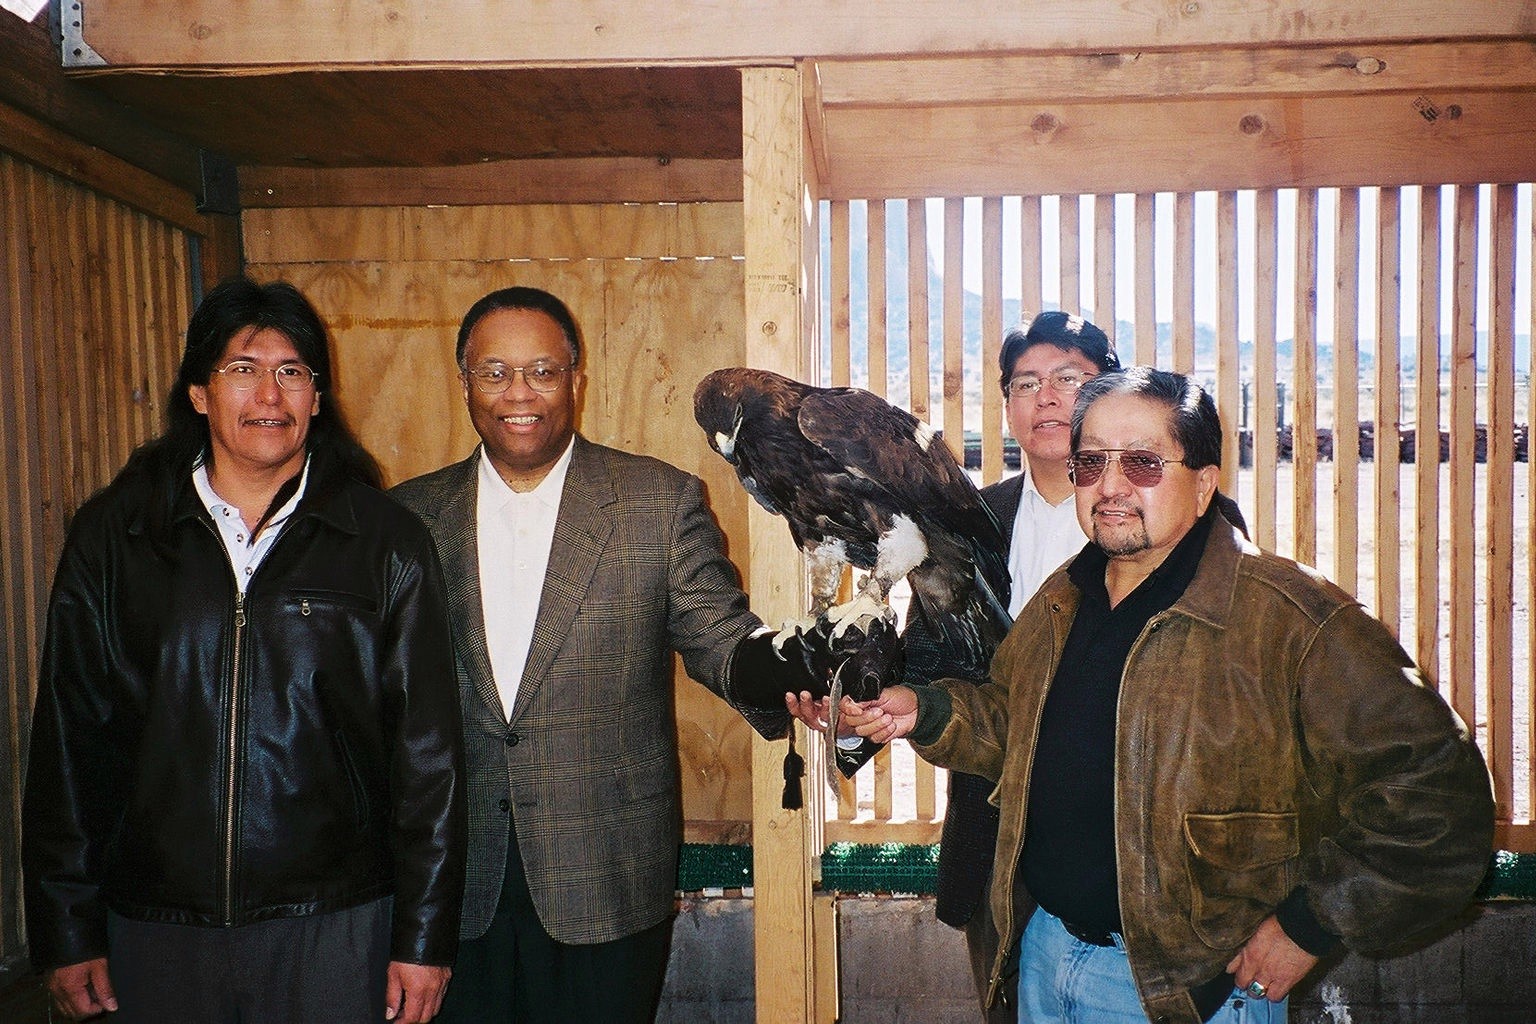 Governor Bowekaty, Pueblo of Zuni, Deputy AG Larry D. Thompson, Councilman Bowekaty, Pueblo of Zuni, and Lt. Governor Martza, Pueblo of Zuni